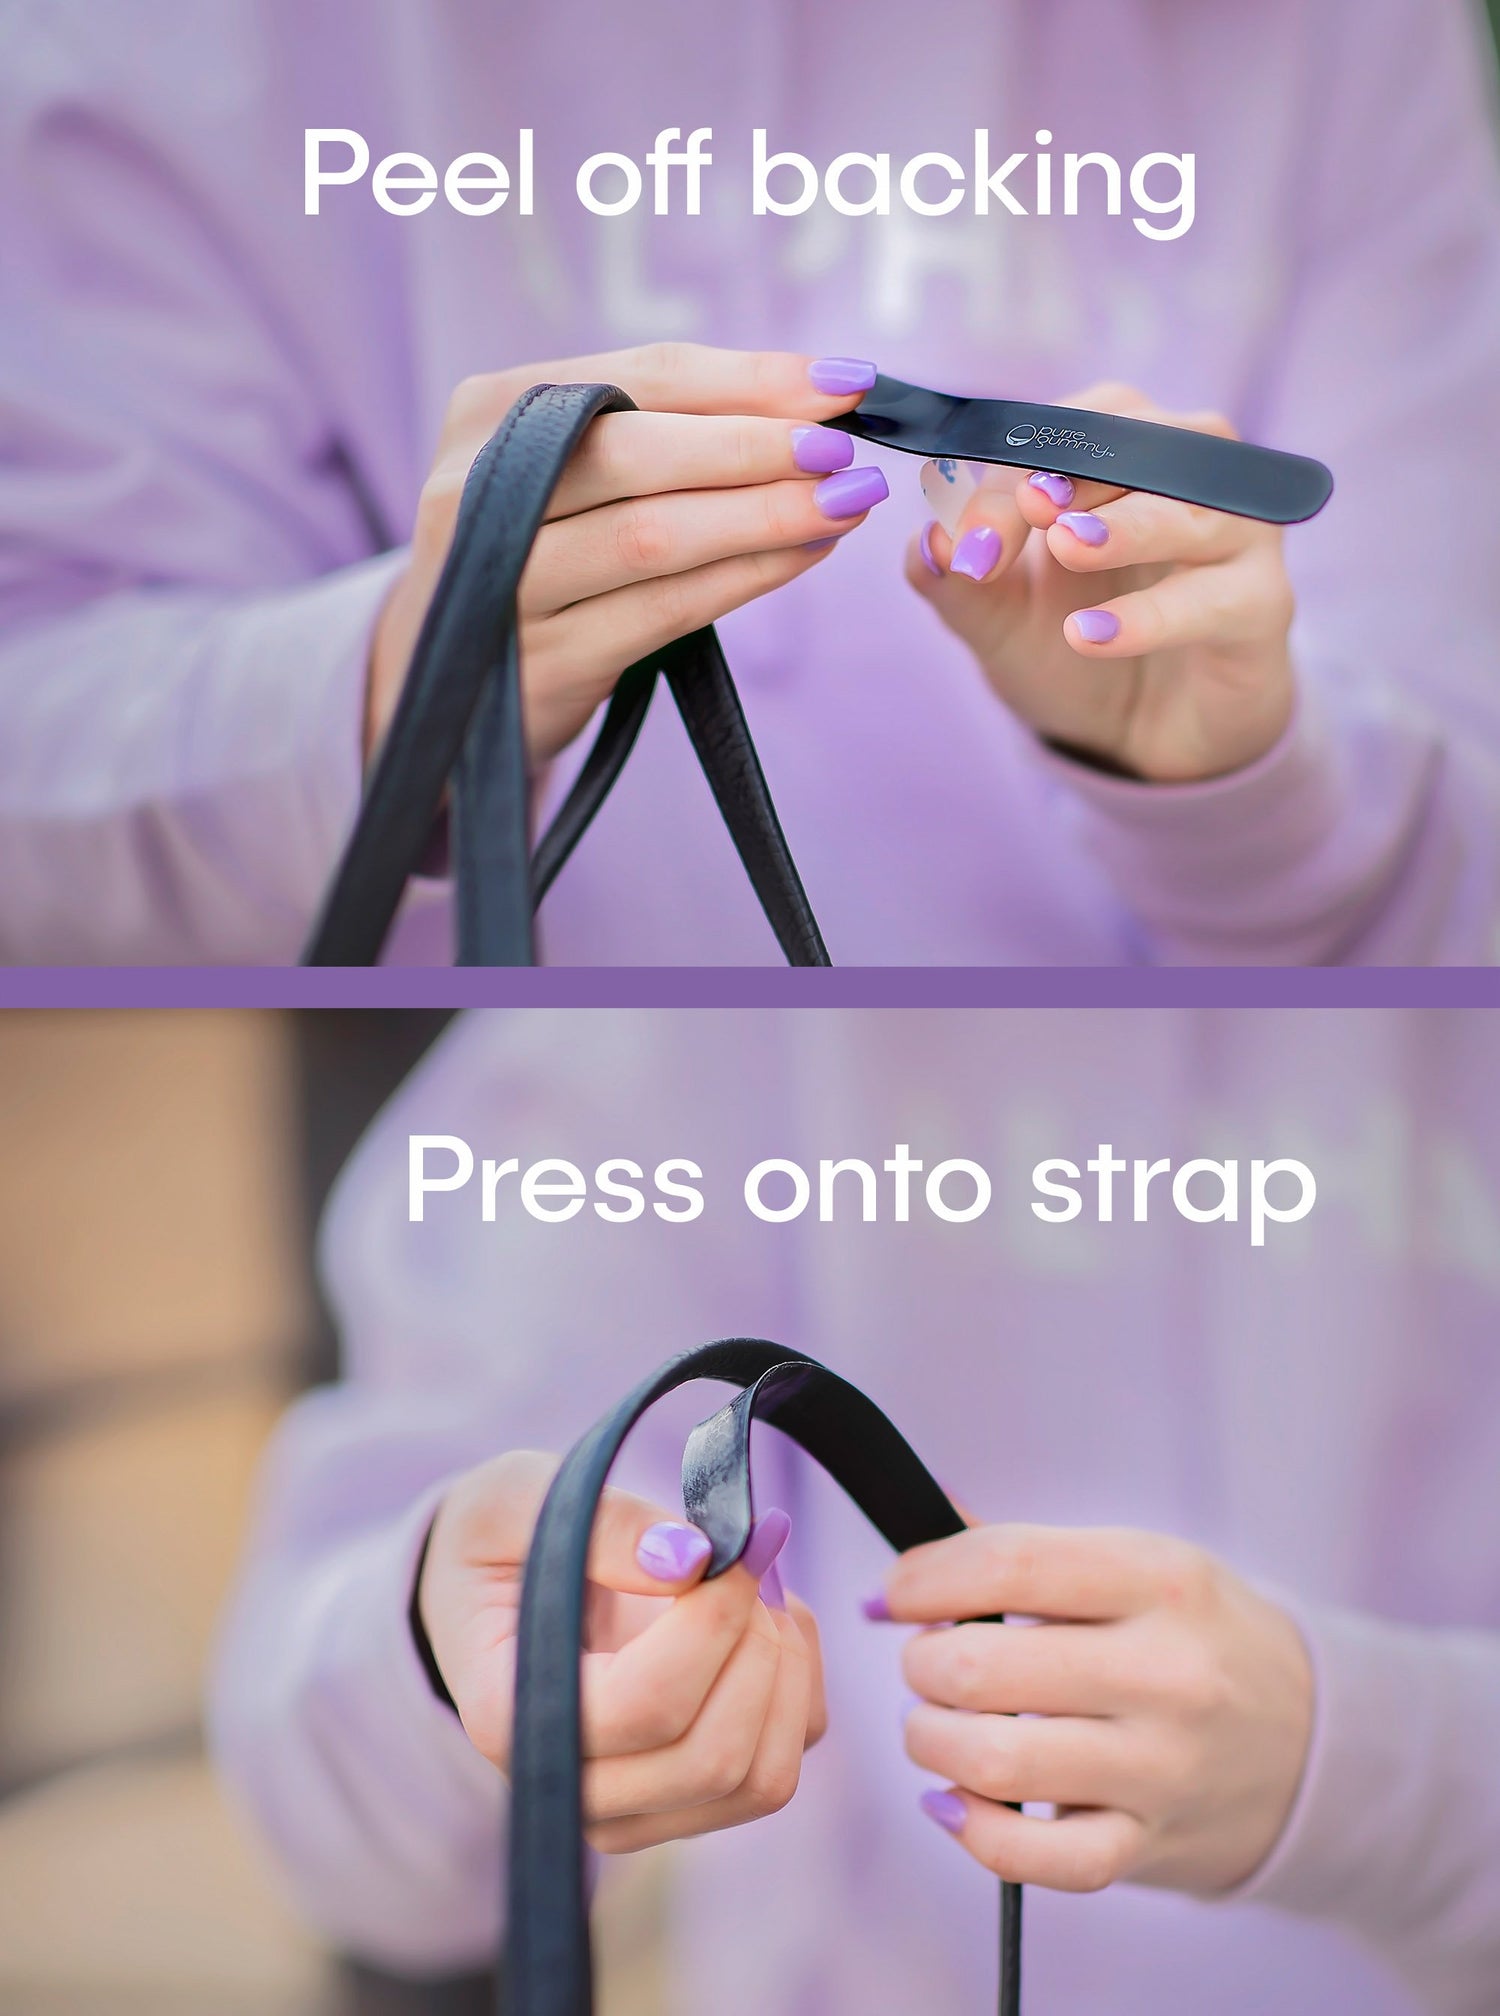  Strap Gummy - Stop Strap Slips - Shoulder Strap Grip